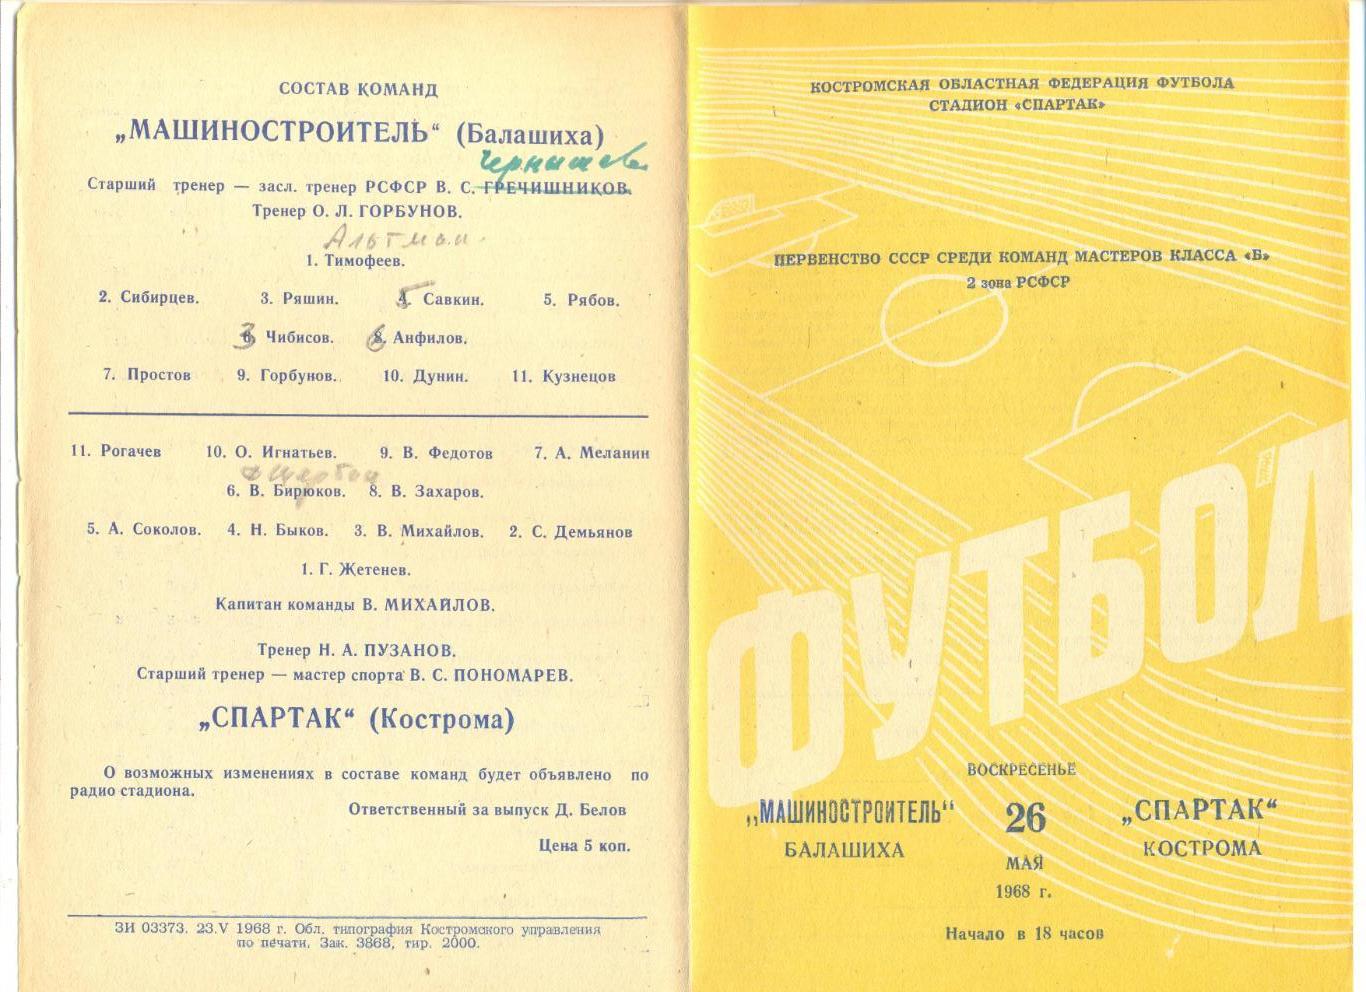 Спартак Кострома - Машиностроитель Балашиха 26.05.1968 г.